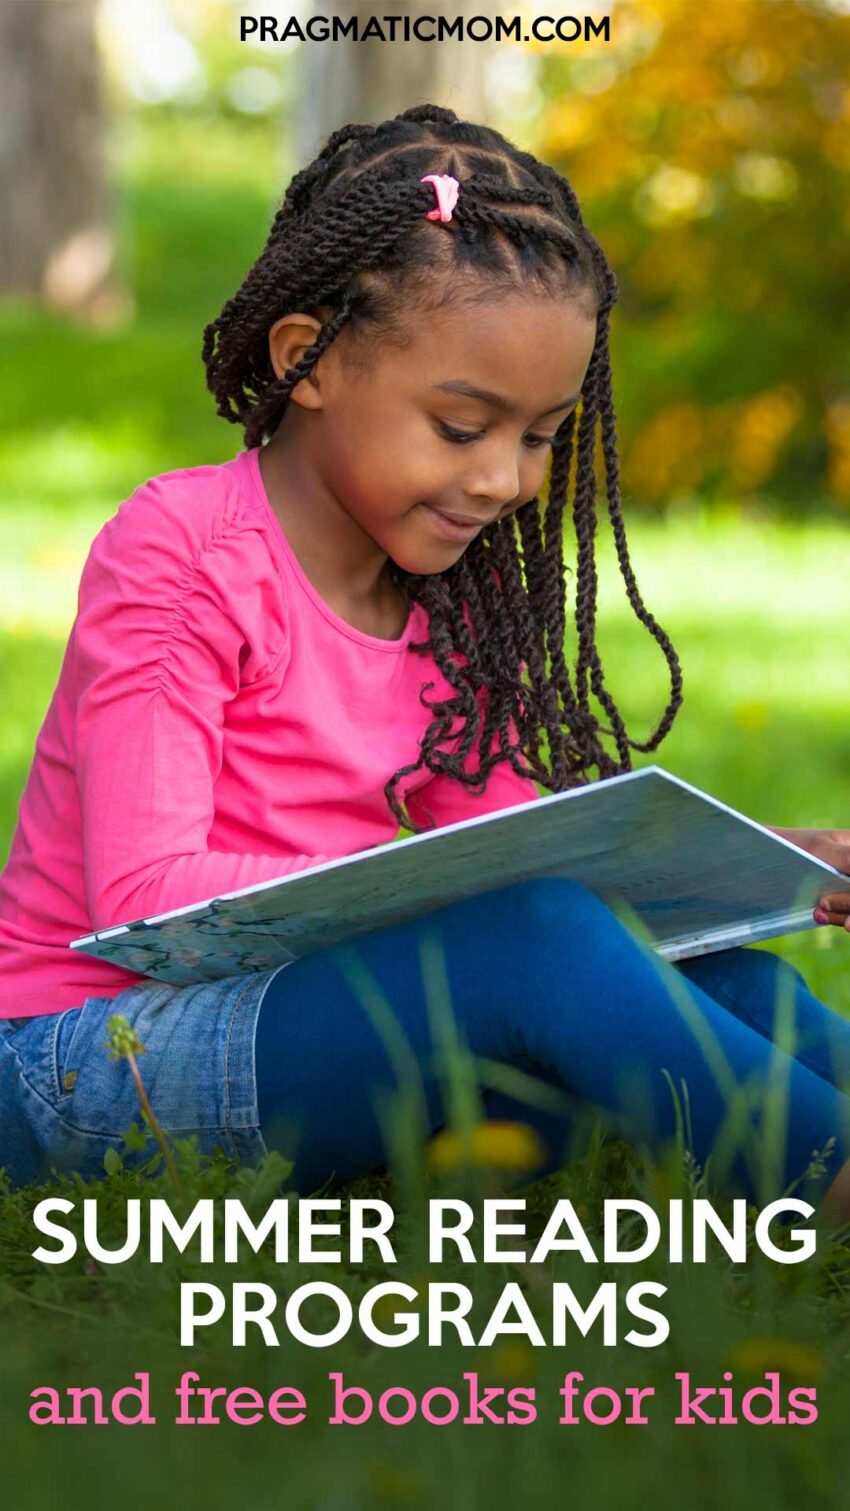 Summer Reading Programs & Free Books for Kids